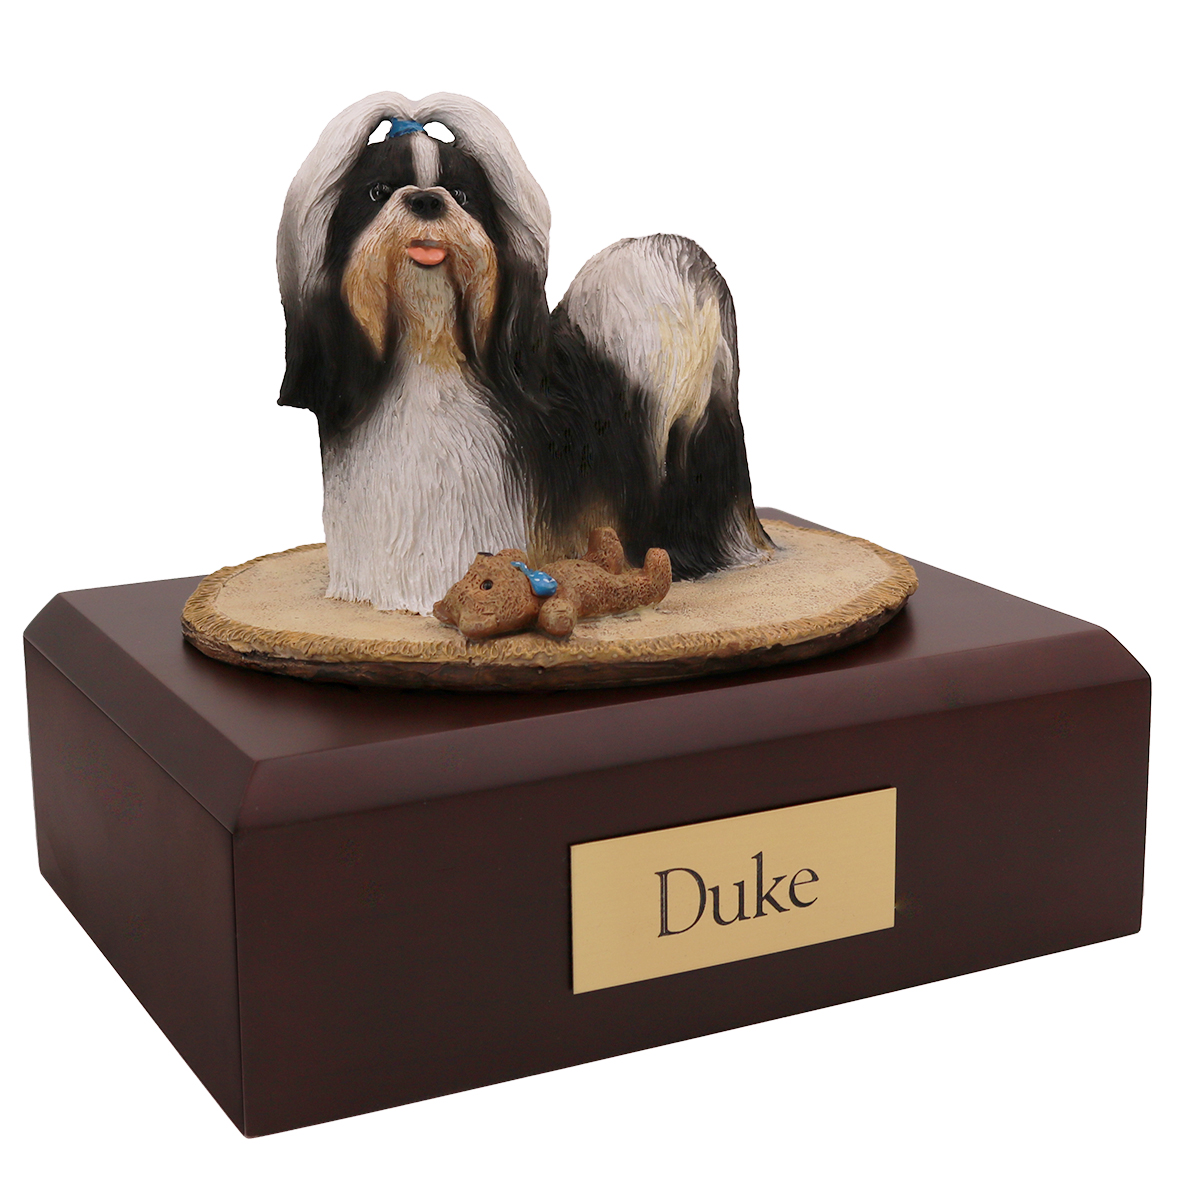 Dog, Shih Tzu - Figurine Urn